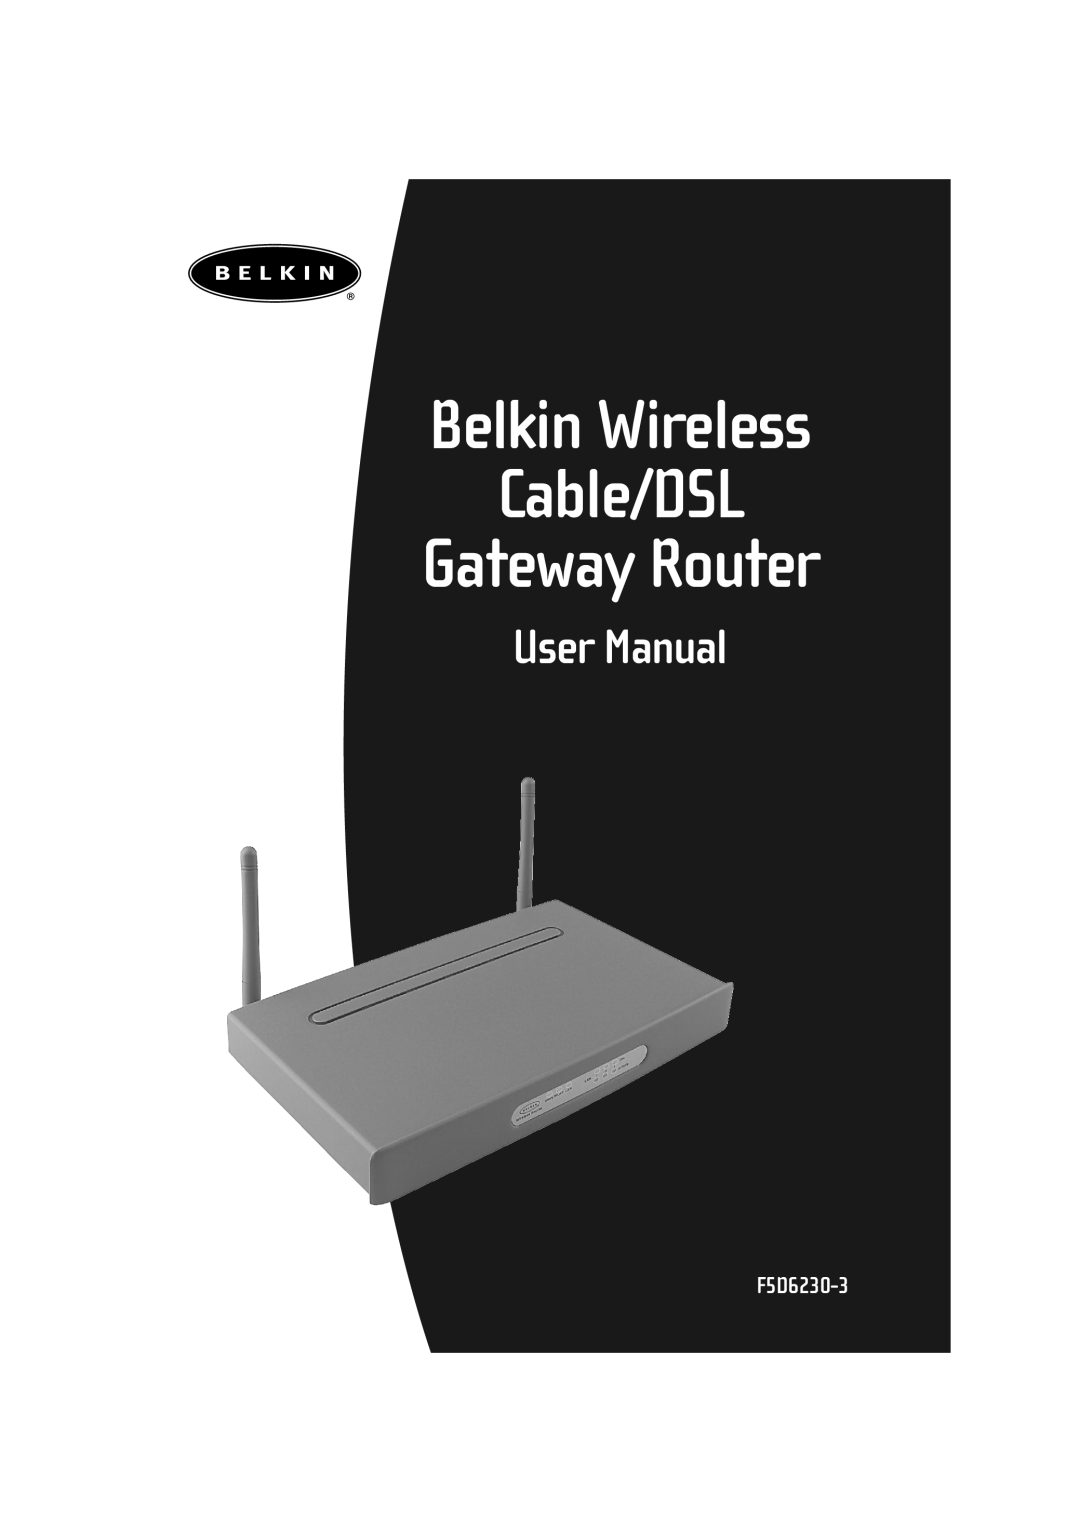 Belkin F506230-3 user manual Belkin Wireless Cable/DSL Gateway Router, User Manual, F5D6230-3 